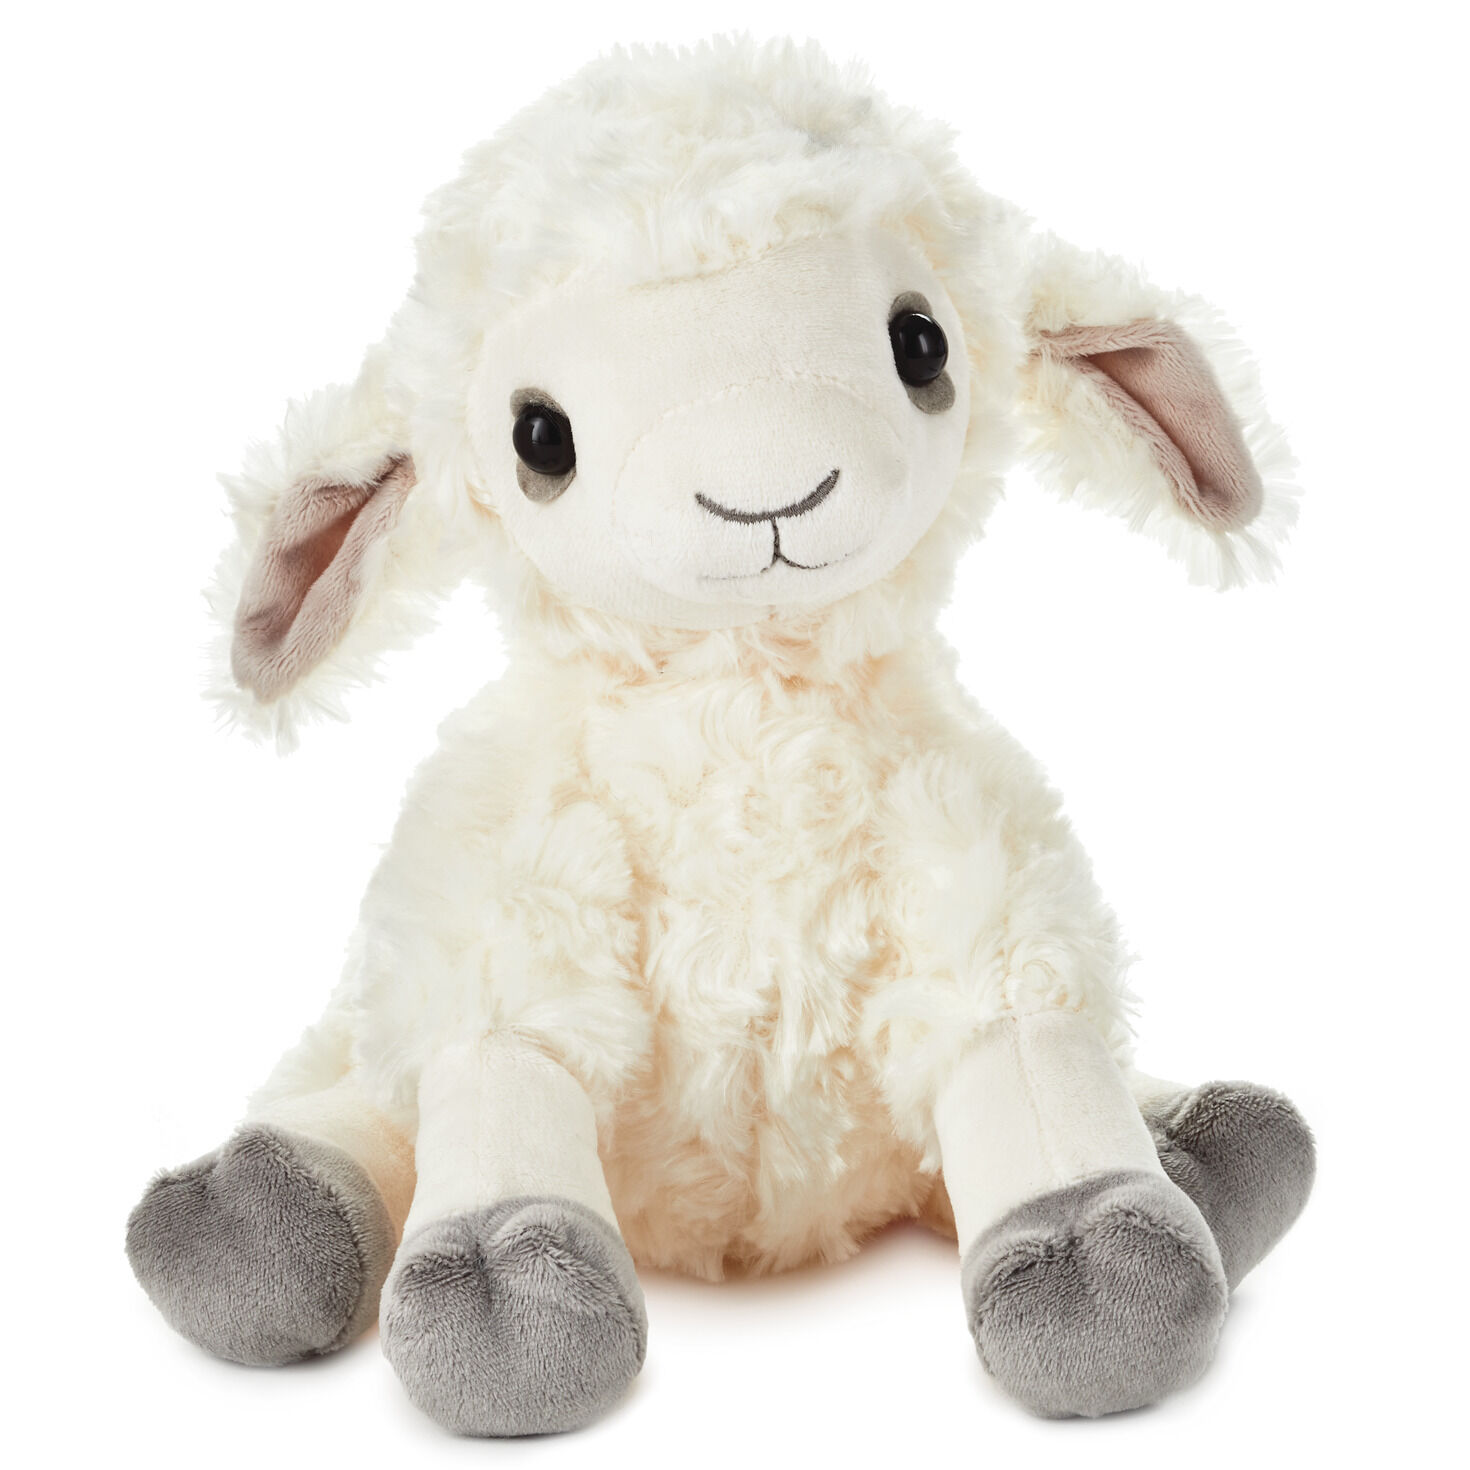 stuffed baby lamb